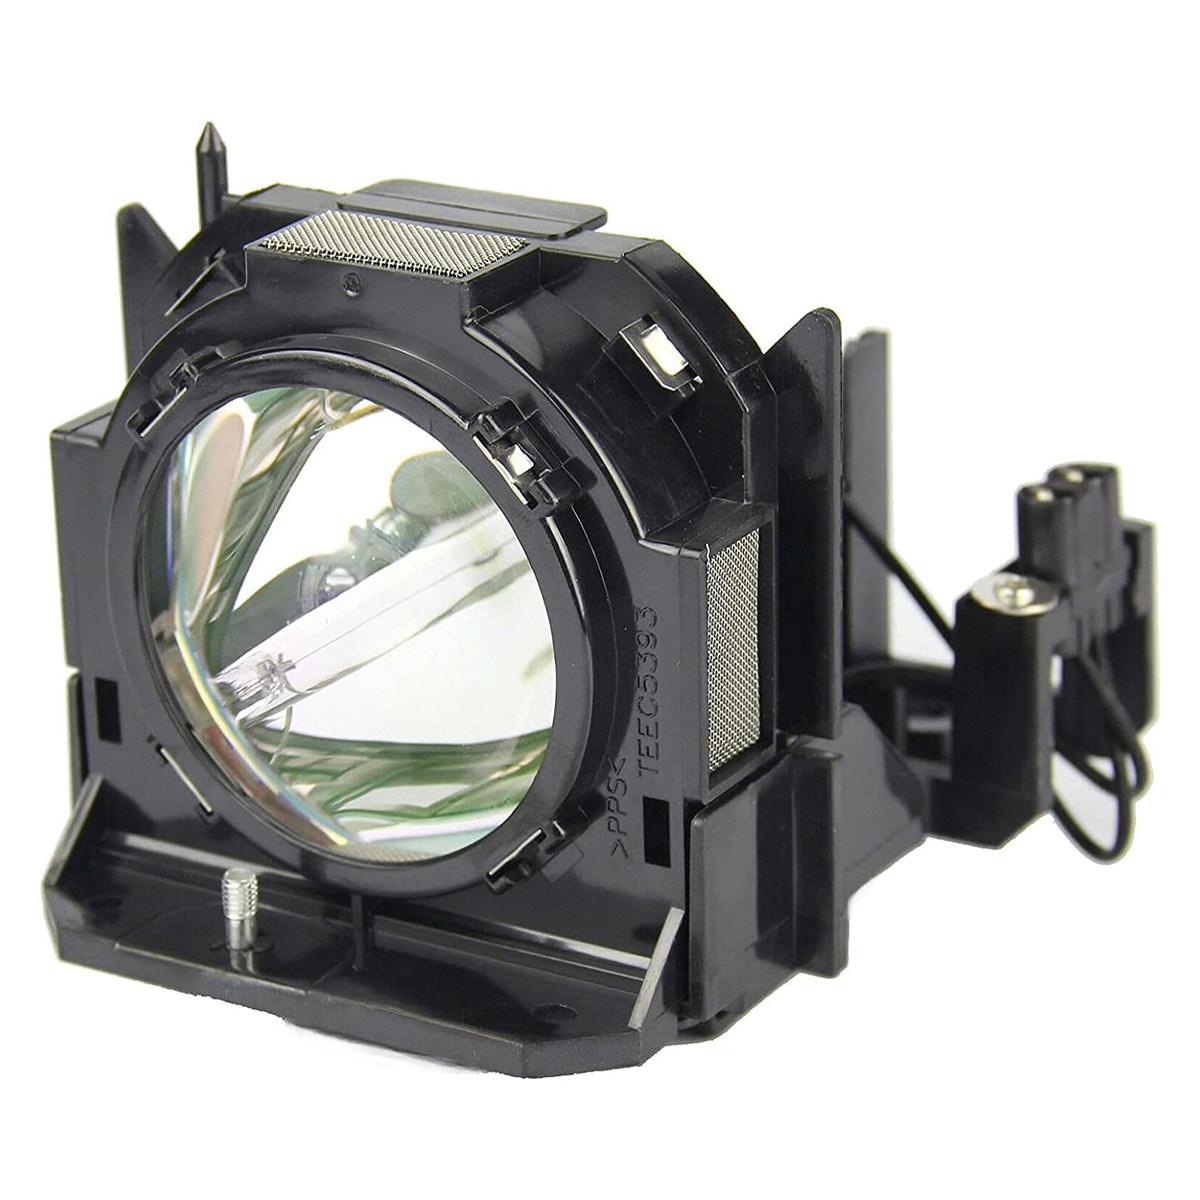 Replacement Projector lamp ET-LAD60 For PANASONIC PT-D5000 PT-D6000 PT-DW6300